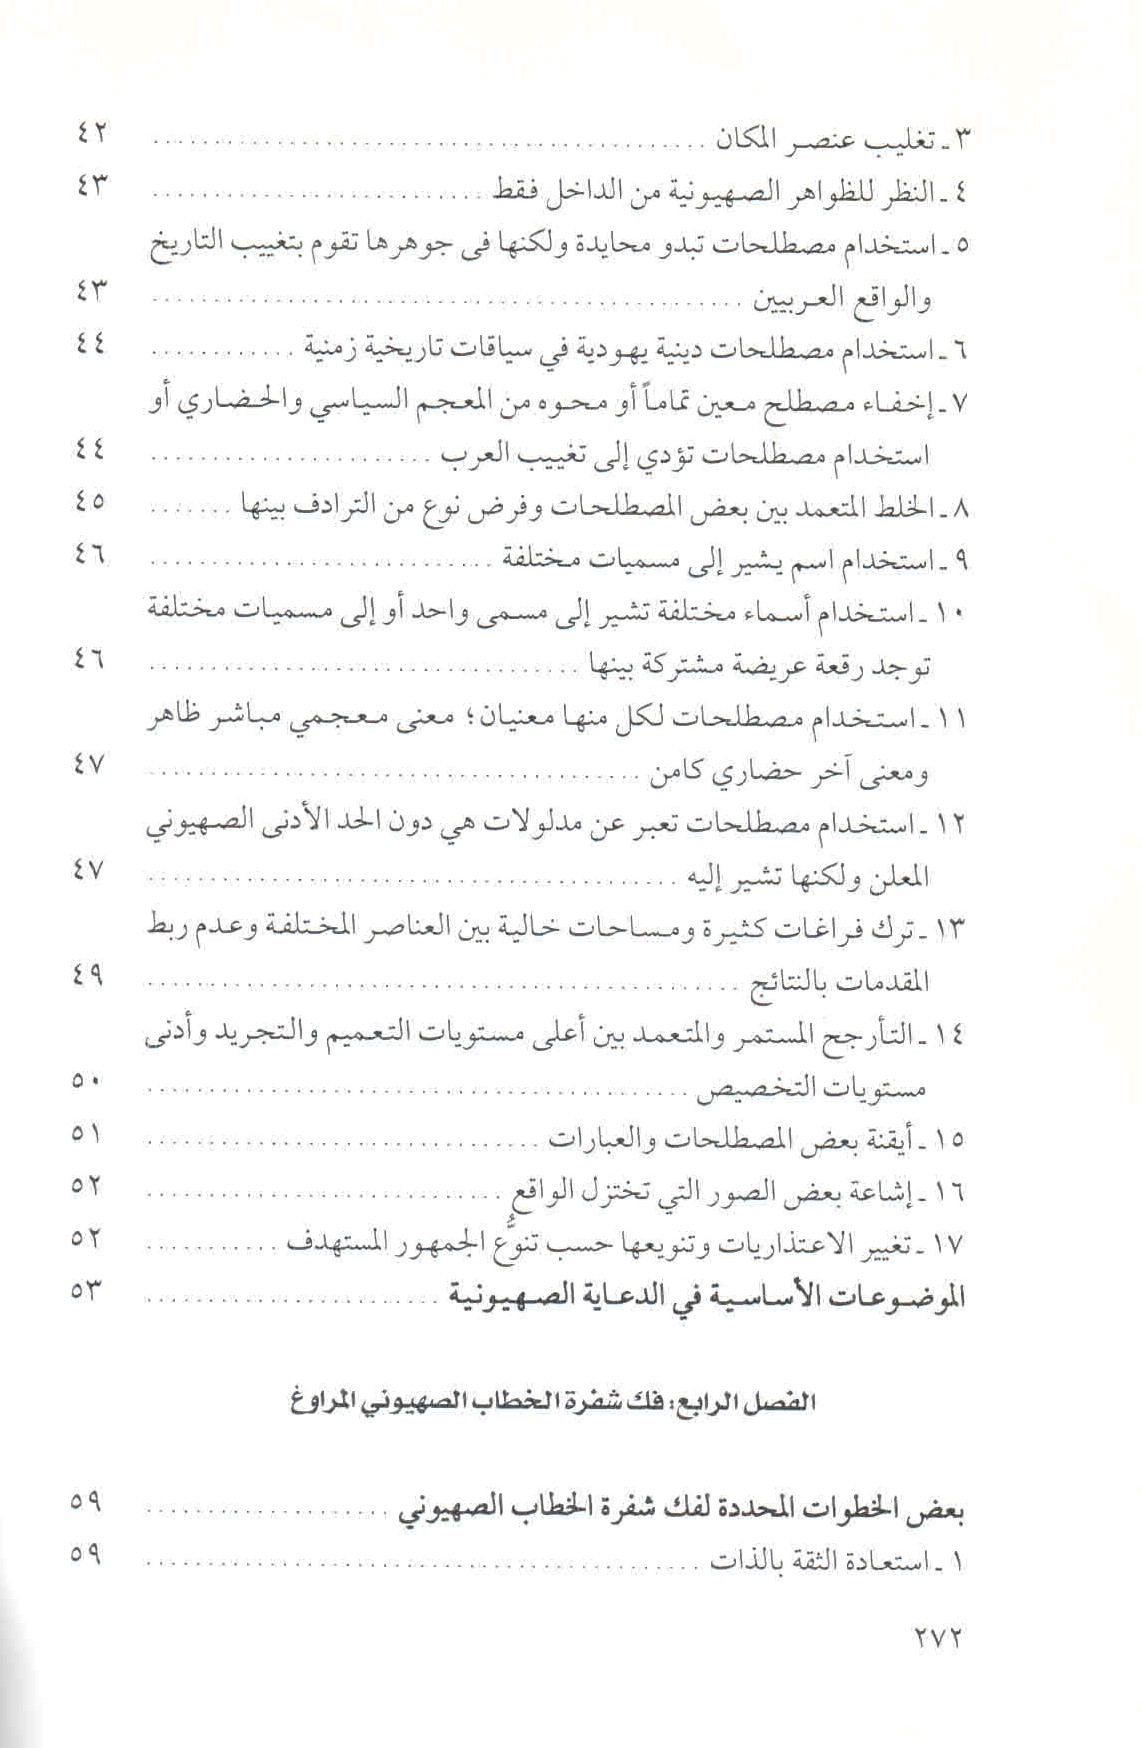 قائمة محتويات كتاب في الخطاب والمصطلح الصهيوني ص. 272.